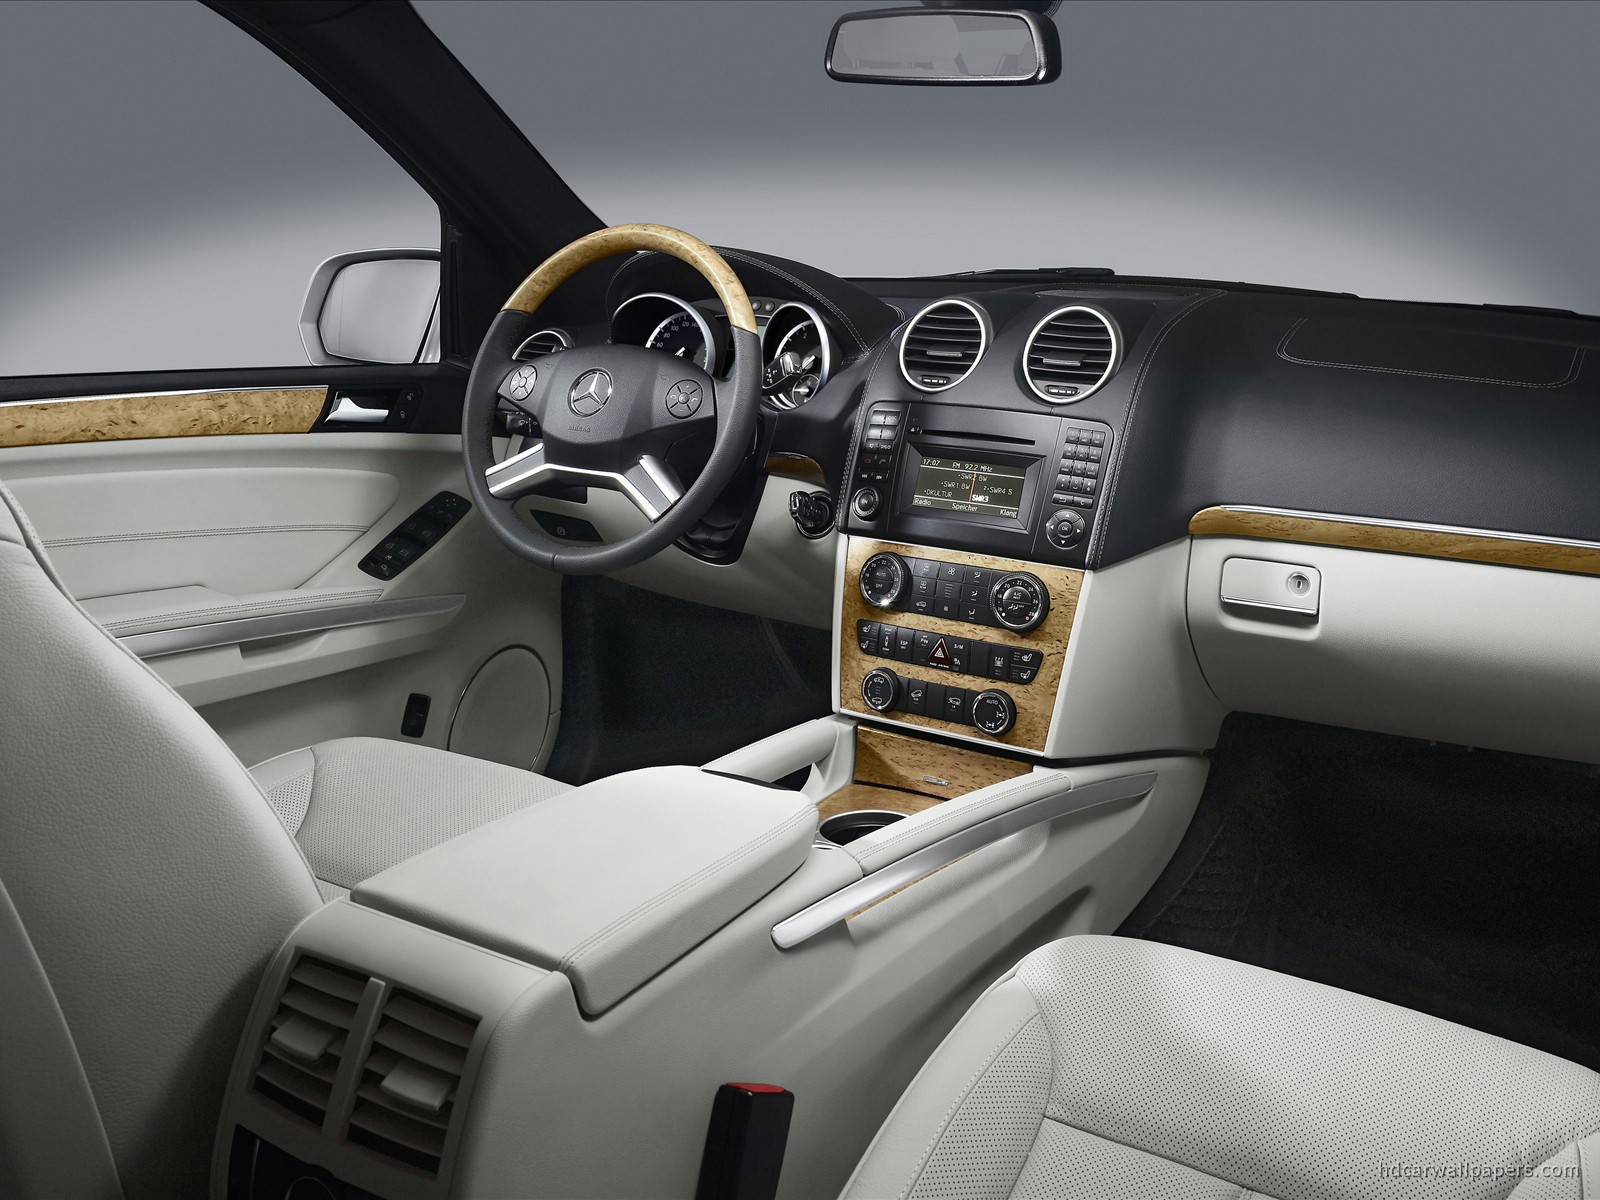 2009 Mercedes Benz Suv Interior Wallpaper Hd Car